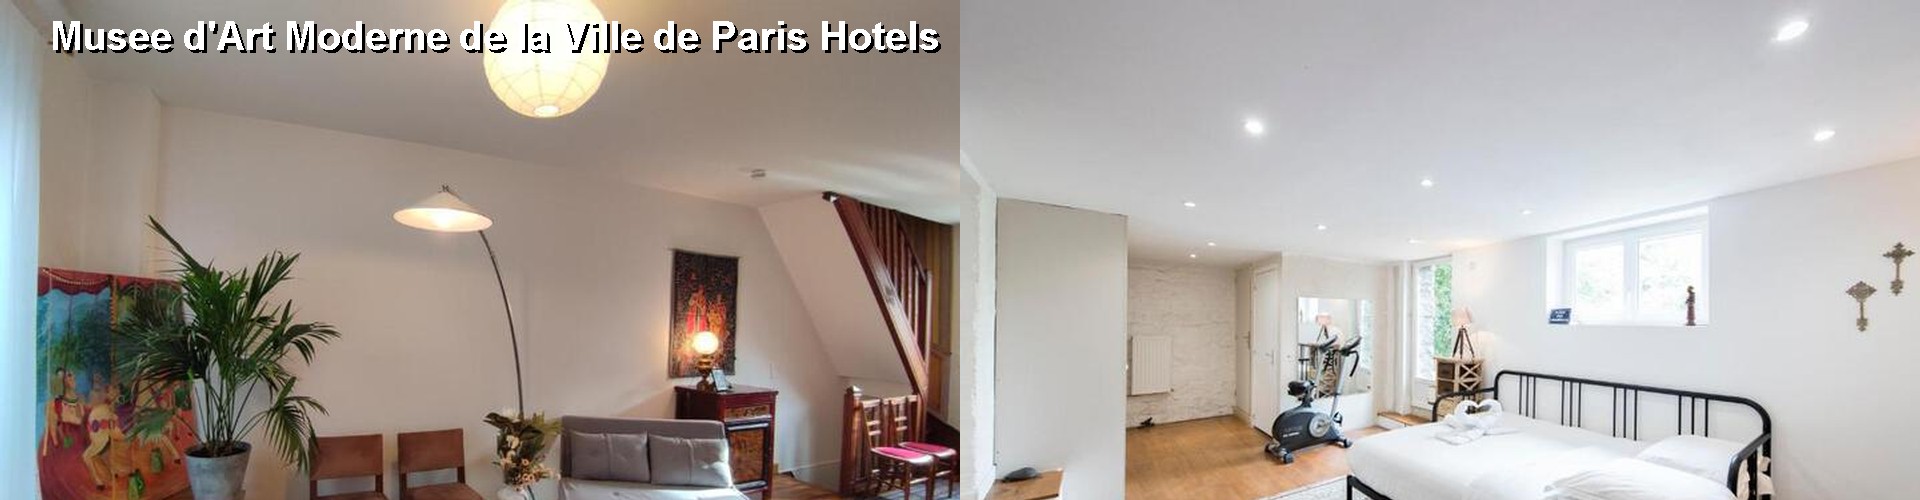 5 Best Hotels near Musee d'Art Moderne de la Ville de Paris